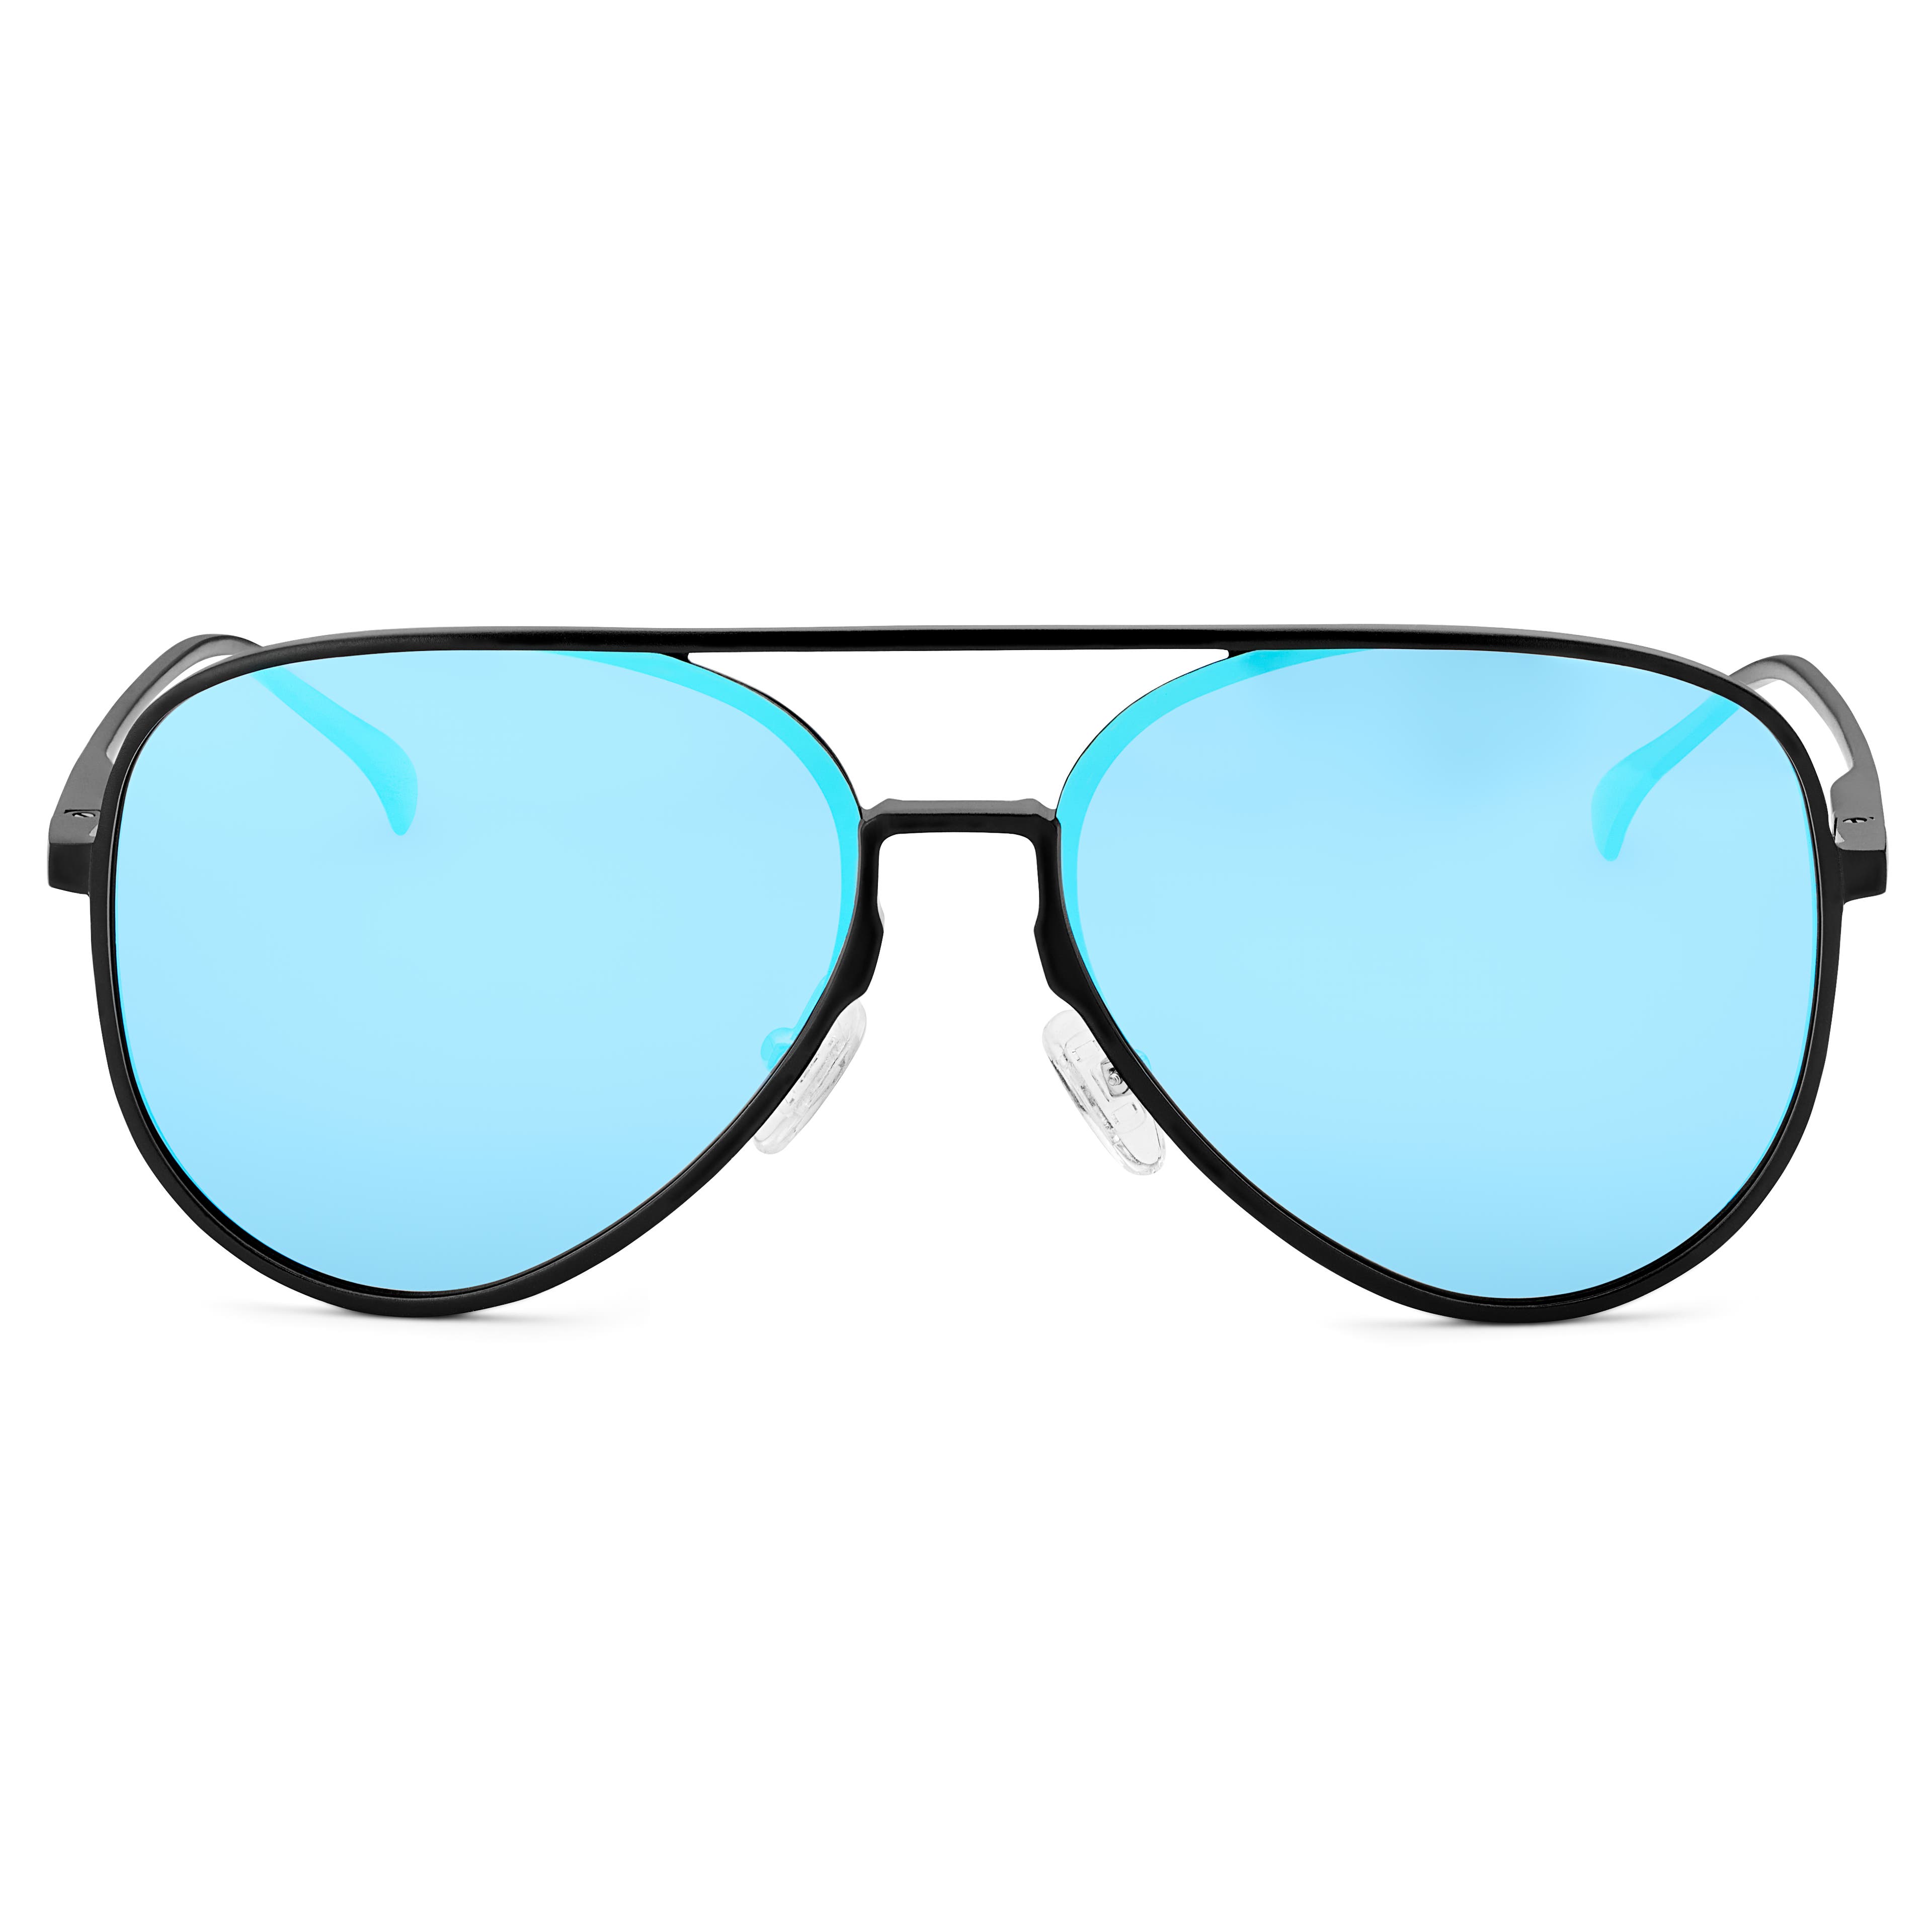 Čierne modré zrkadlové polarizačné aviator slnečné okuliare